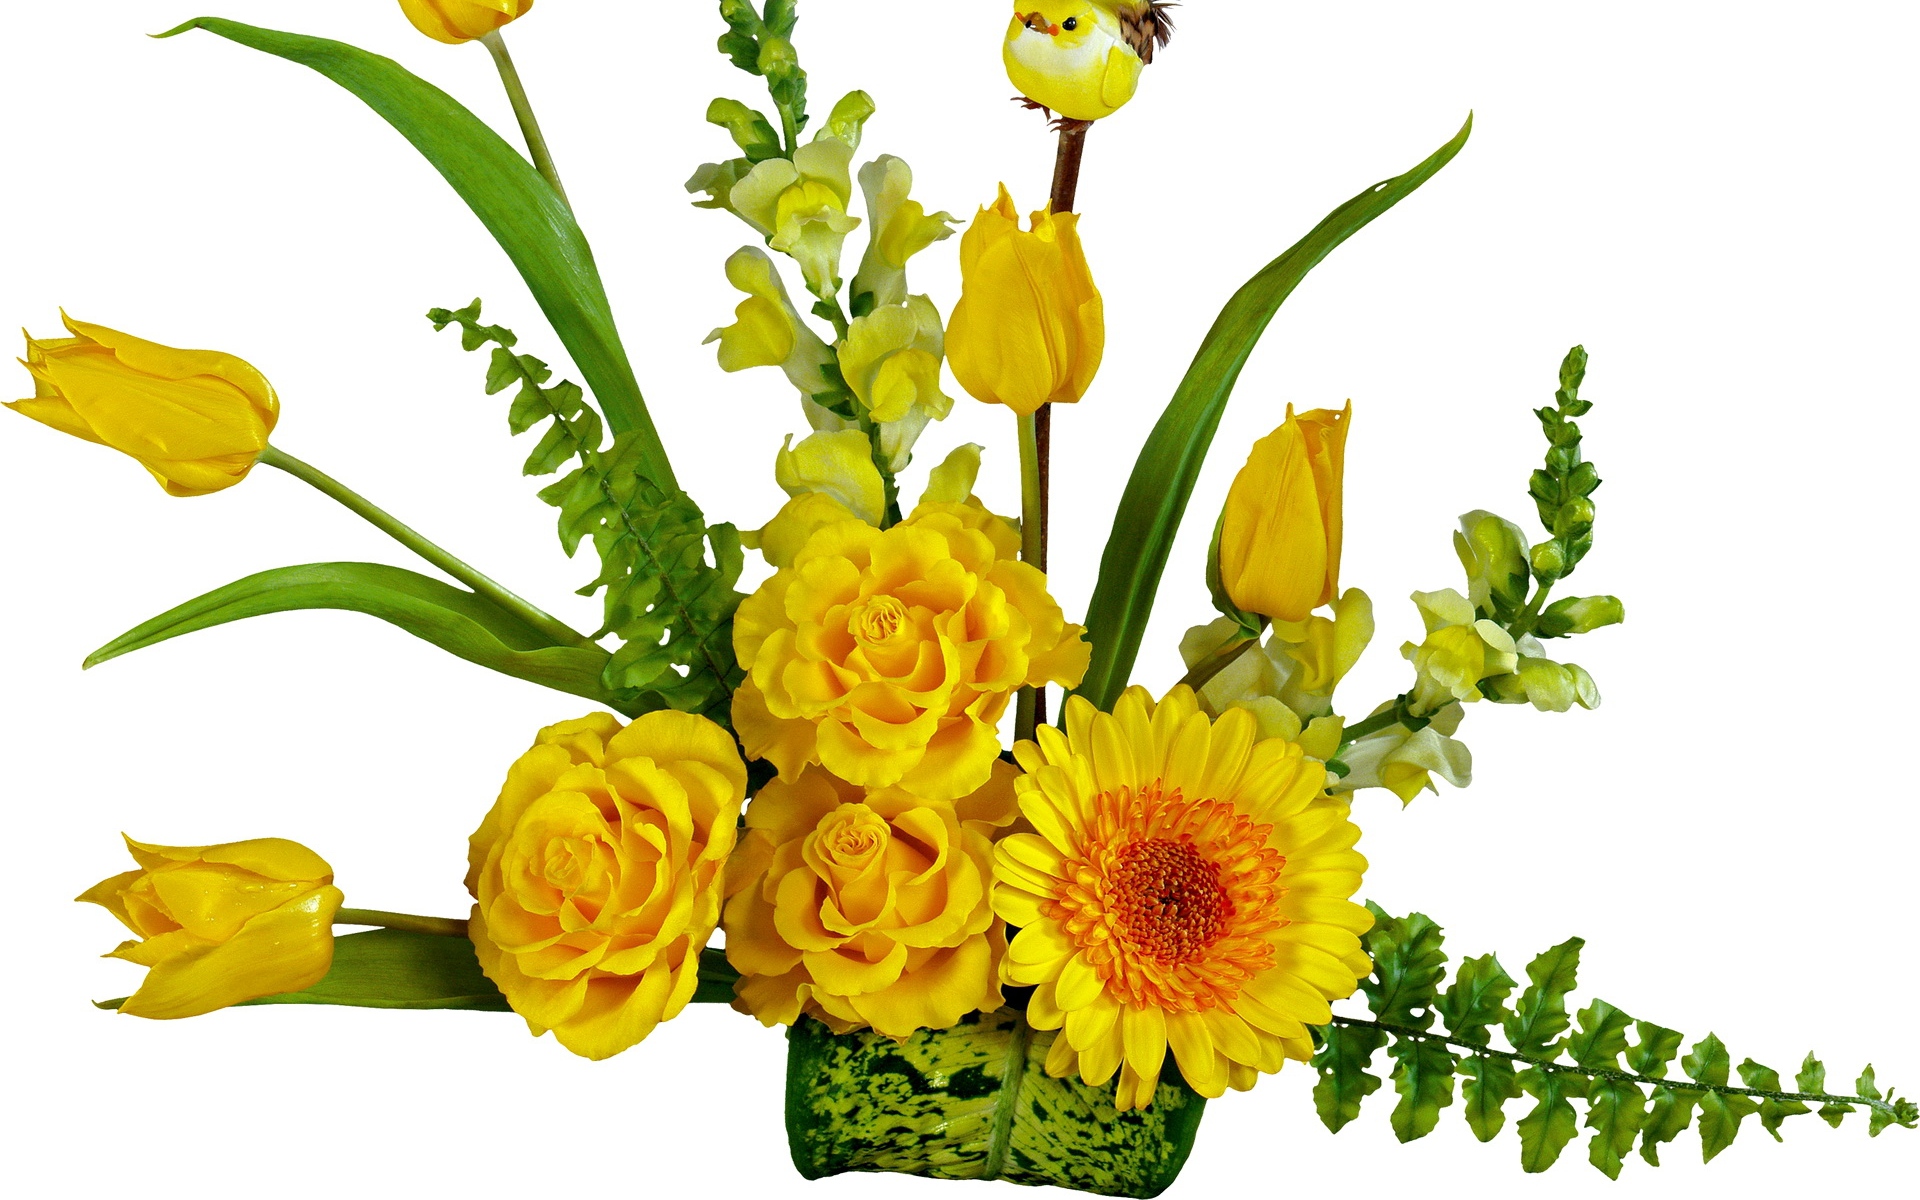 Картинки Тюльпаны, розы, цветы, цветок, желтый, листья, птица фото и обои на рабочий стол